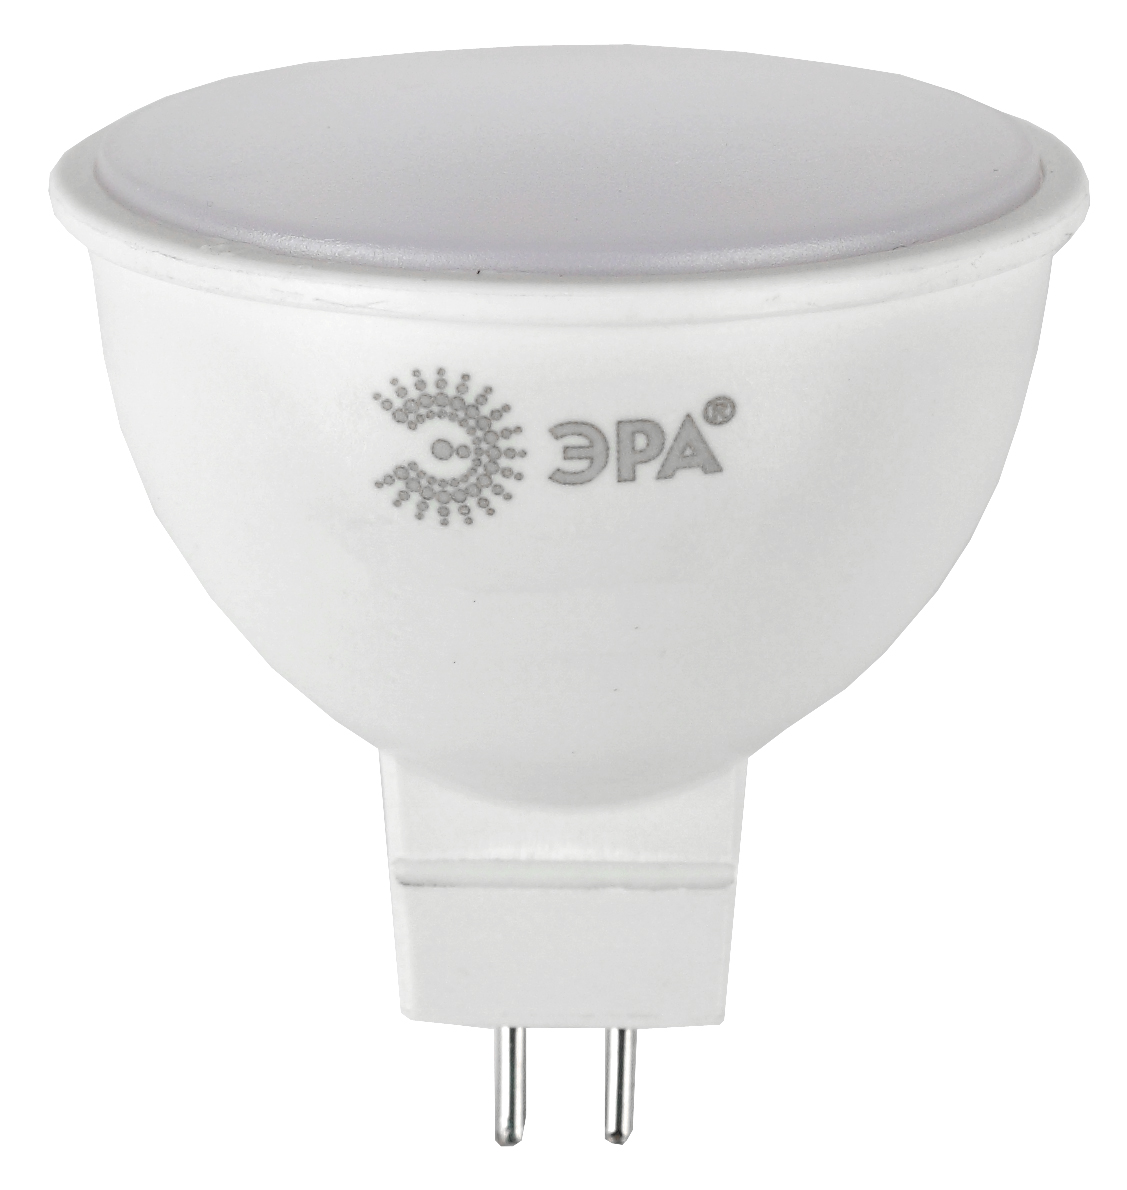 Лампа светодиодная Эра GU5.3 5W 2700K ECO LED MR16-5W-827-GU5.3 Б0019060